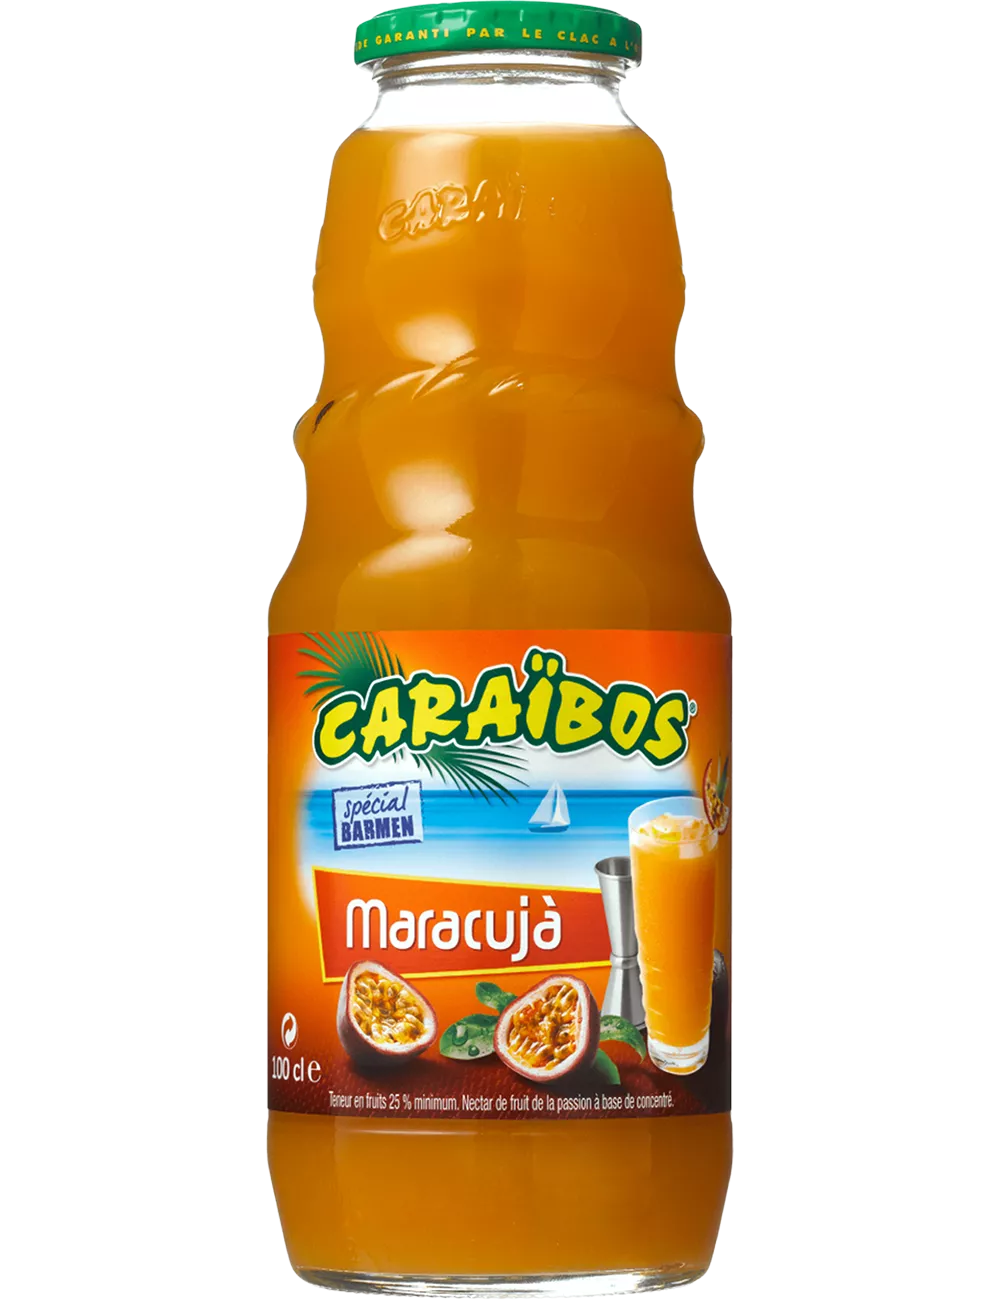 Nectar de Maracujà - Caraïbos